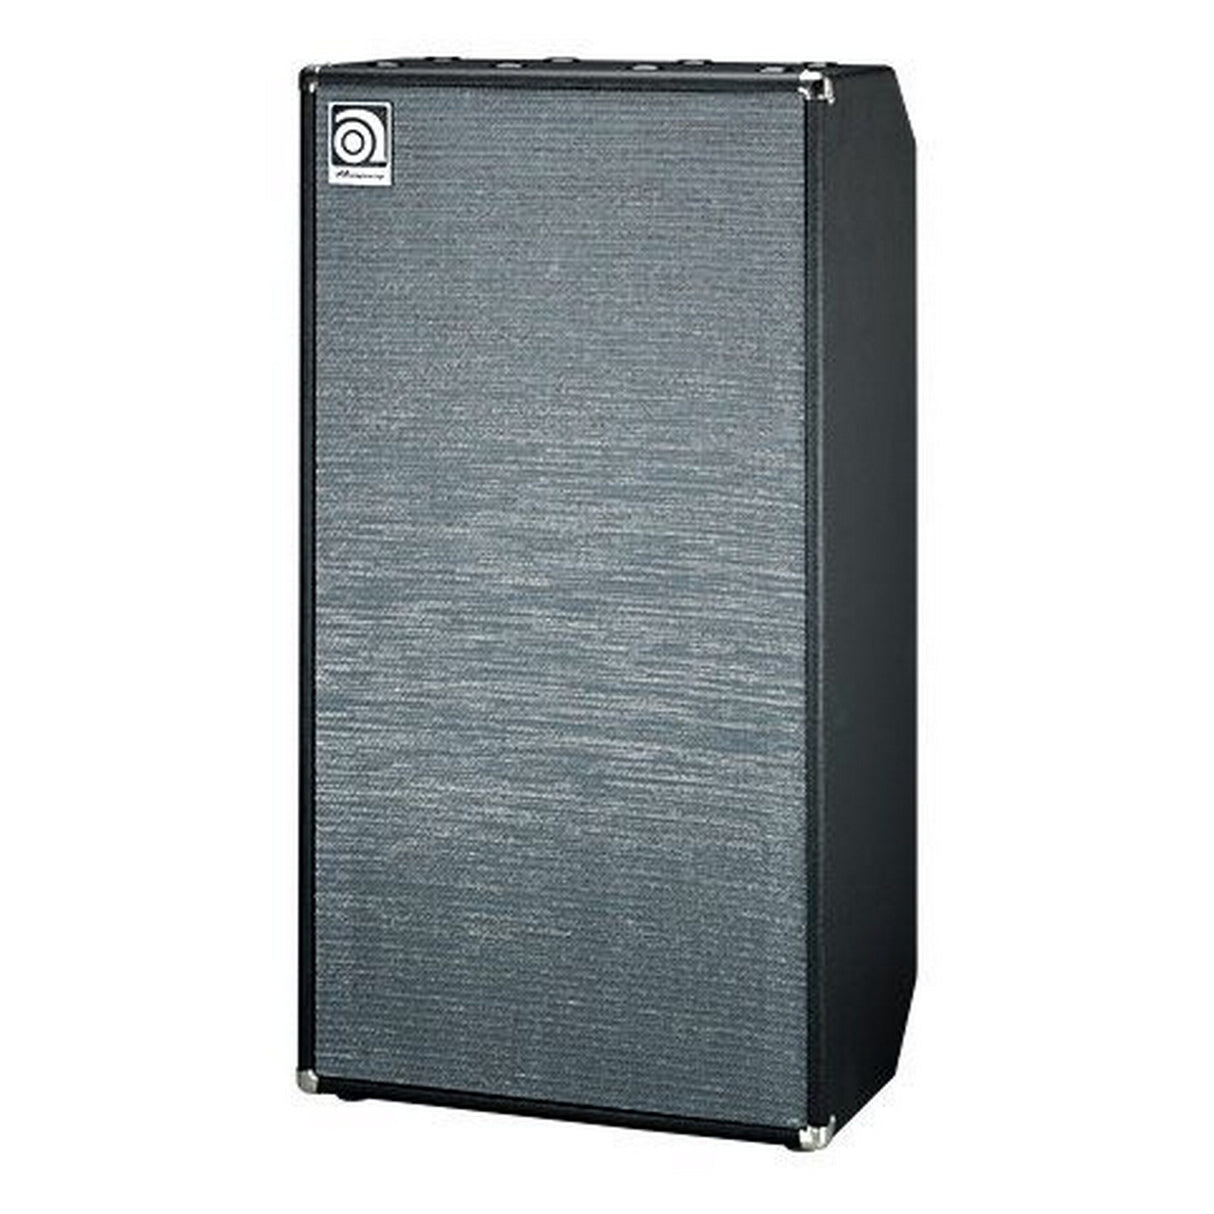 Ampeg SVT-810AV 8 x 10 Inch Bass Amp Cabinet